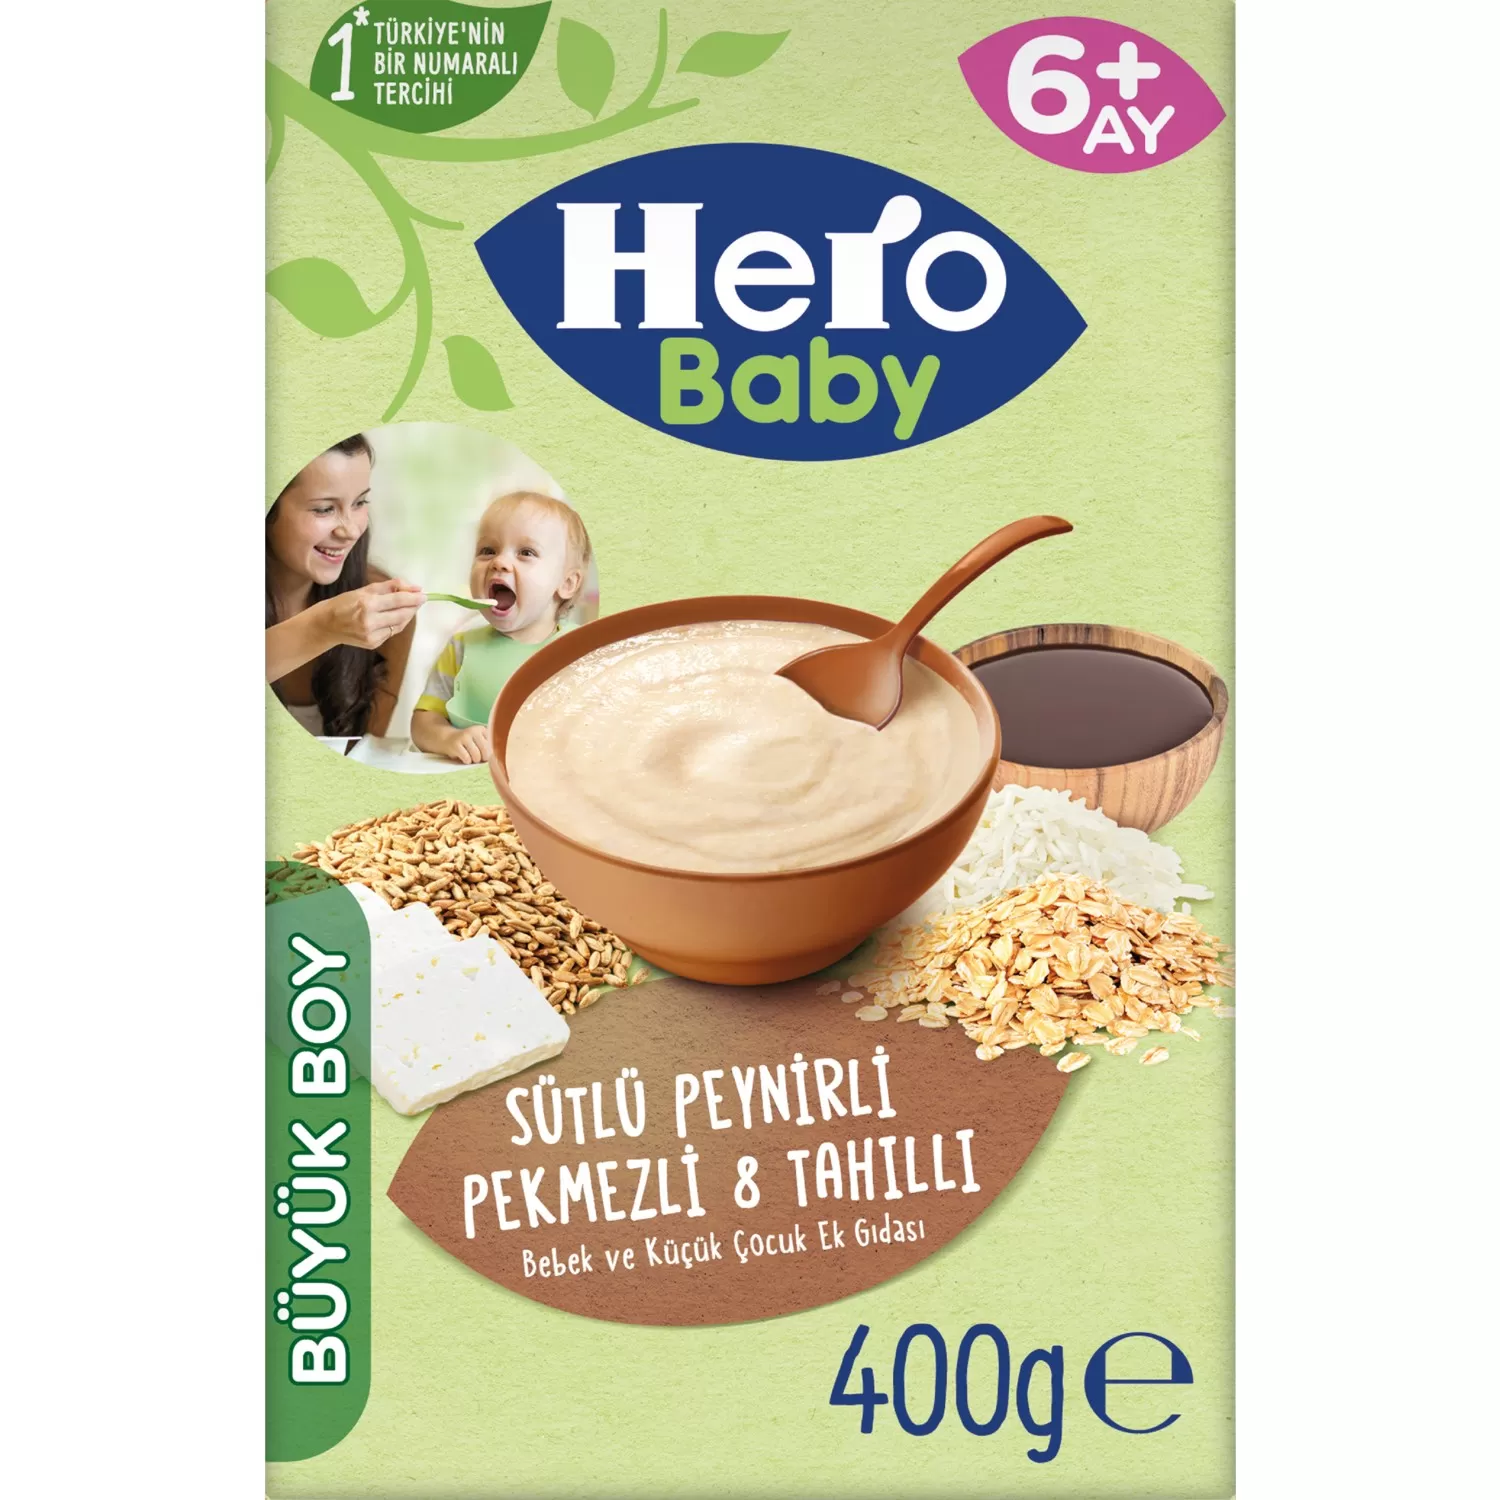 Hero Baby Sütlü Peynirli Pekmezli 8 Tahıllı Kaşık Mama 400 gr